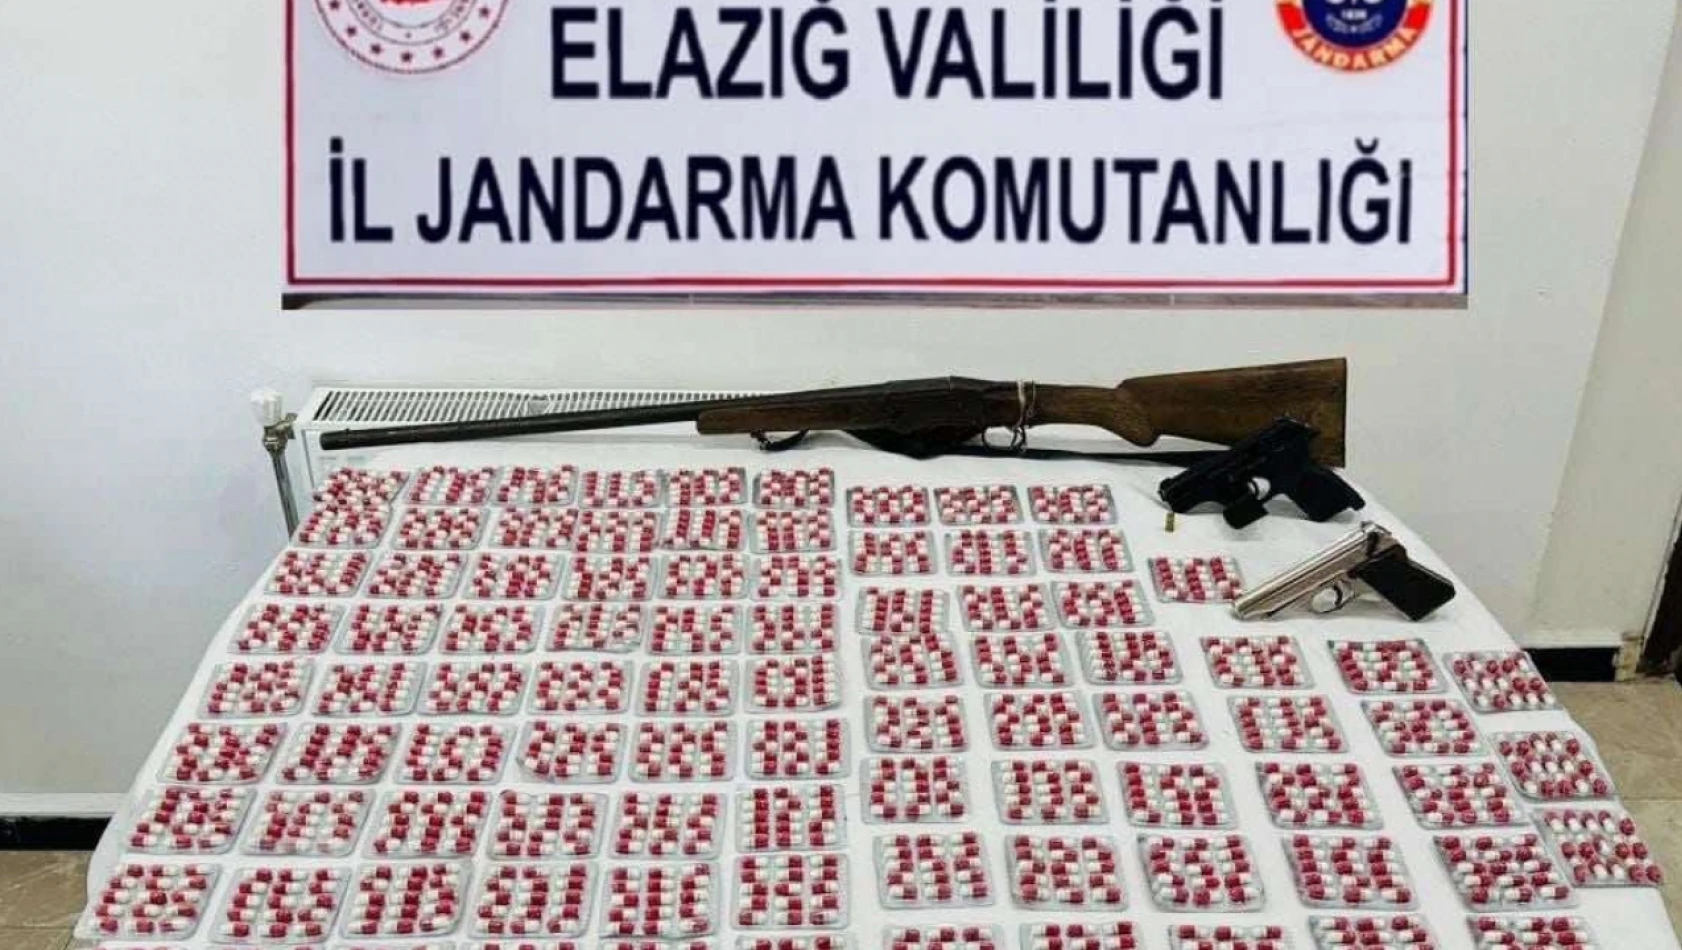 Elazığ'da uyuşturucu operasyonu: 2 bin 751 adet sentetik ecza hap ele geçirildi